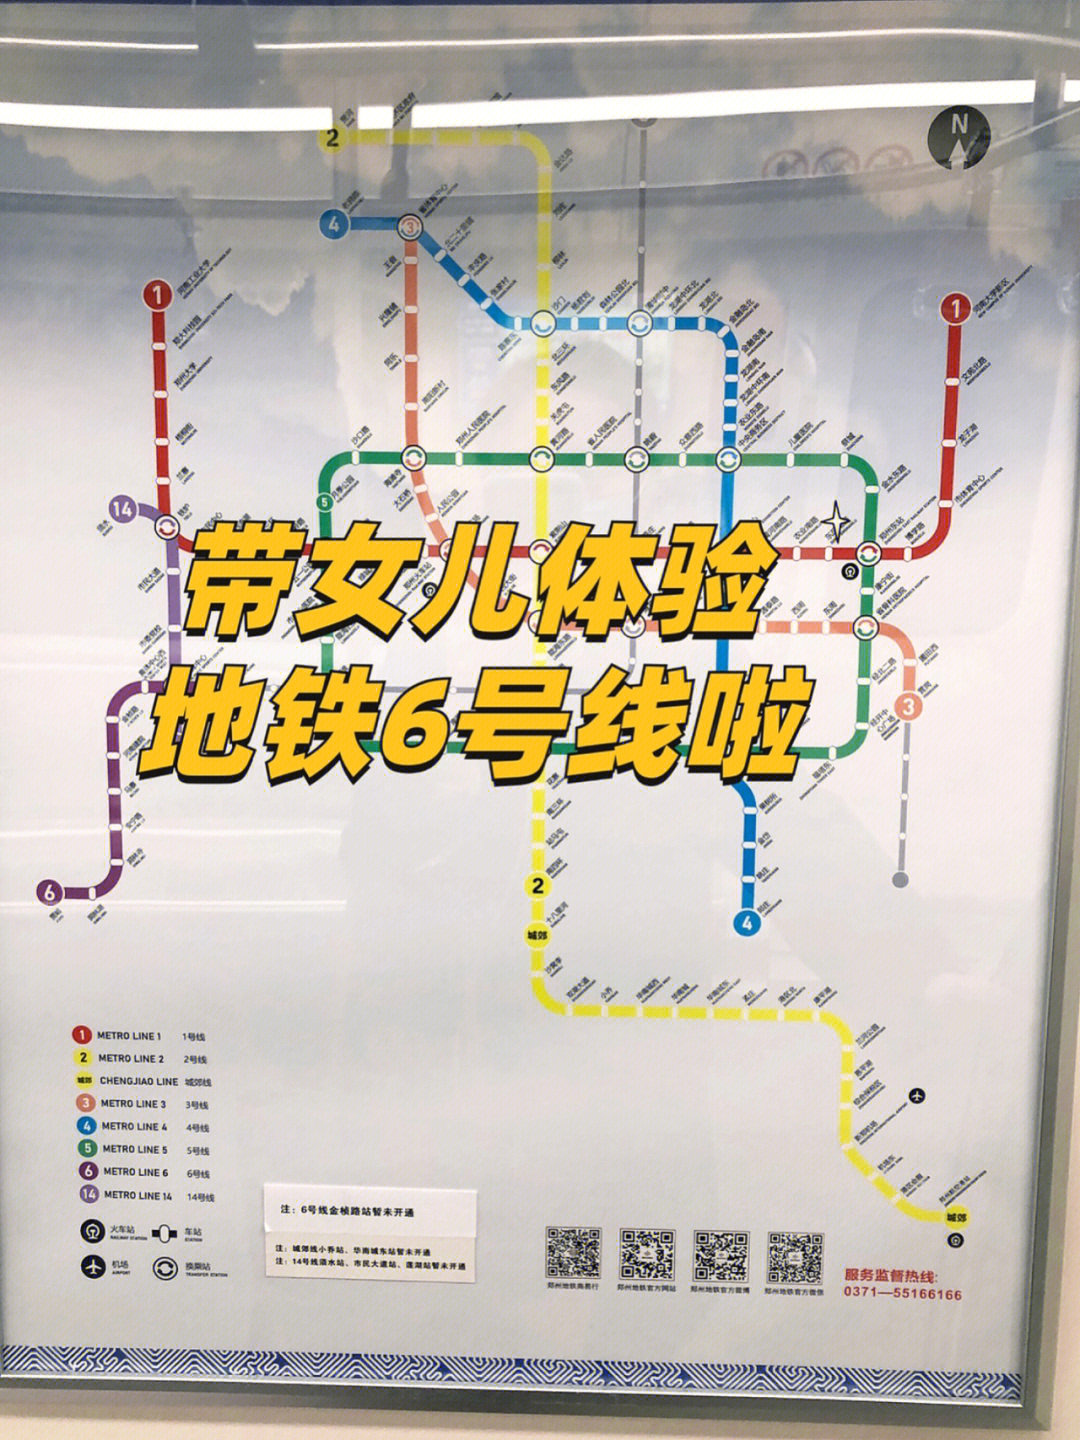 天津地铁一号线站点图片